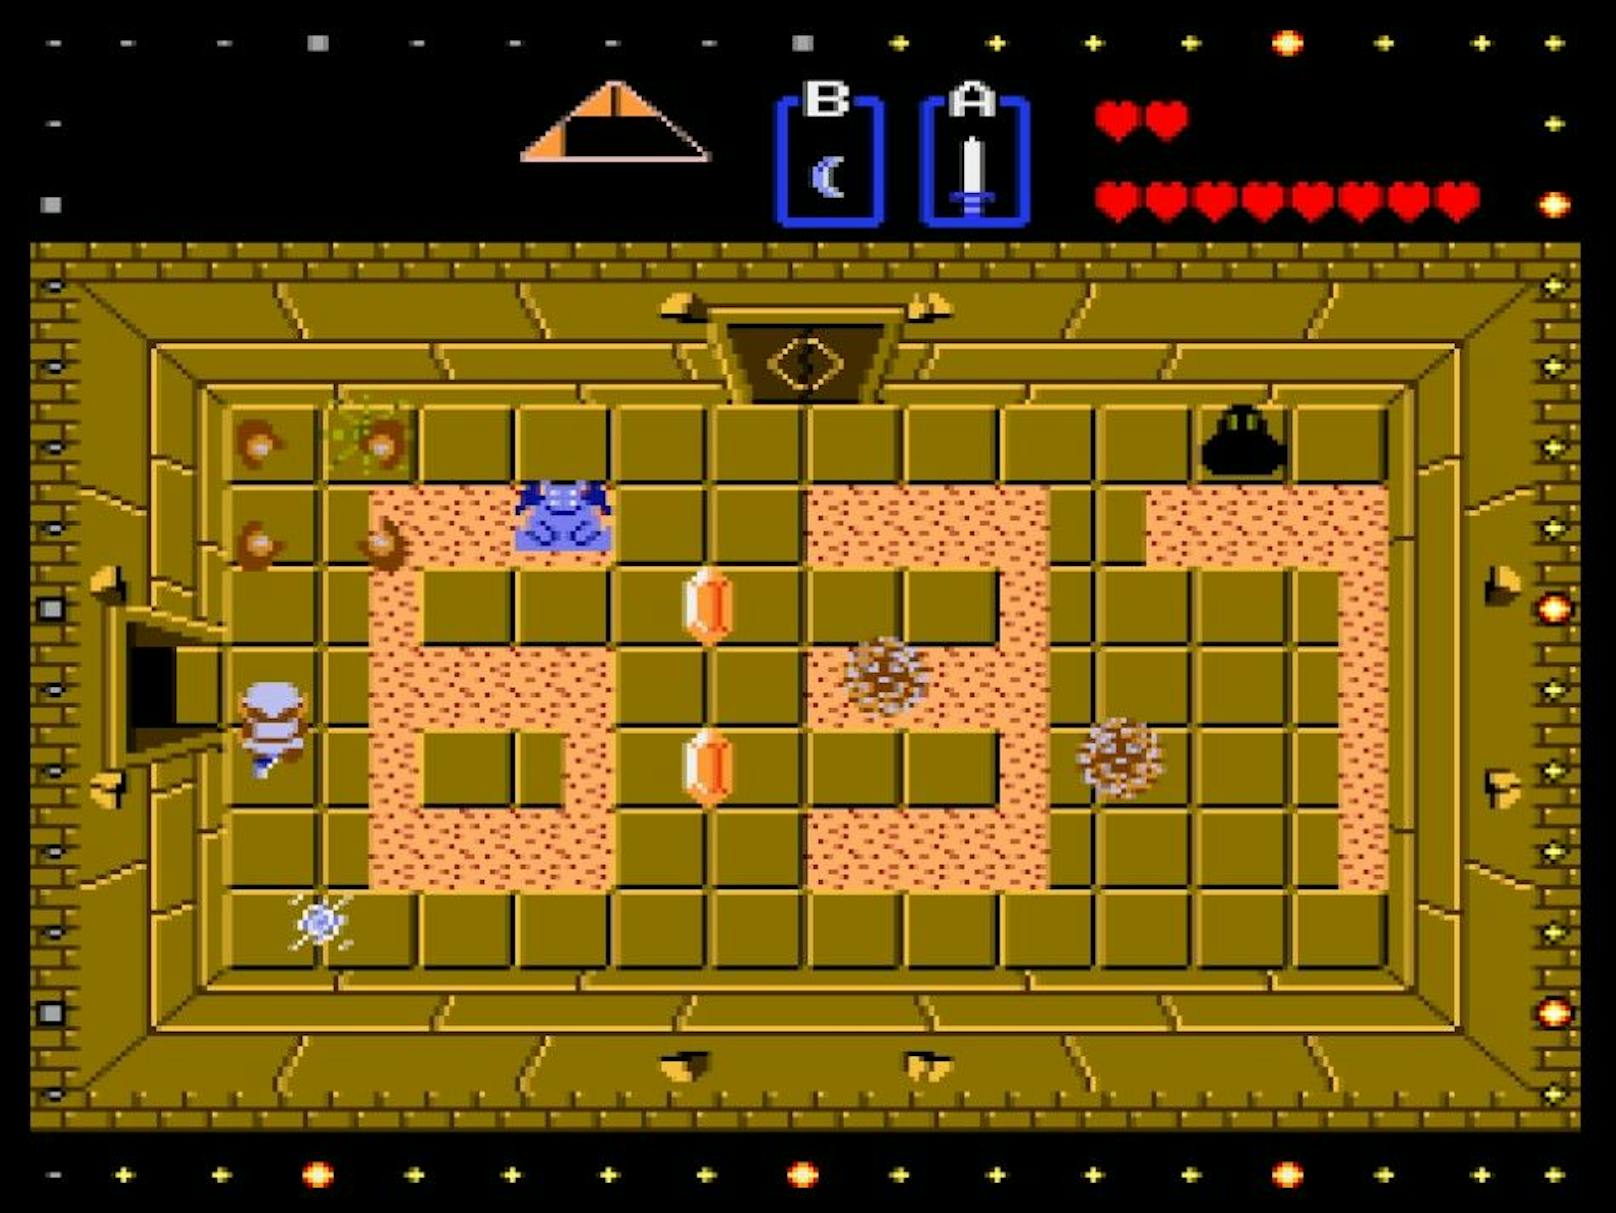 Außerdem zeigt ein spezieller Uhrenmodus groß am Bildschirm die Zeit an, während Link sich um die Ziffern herum automatisiert Gefechte mit Gegnern liefert.